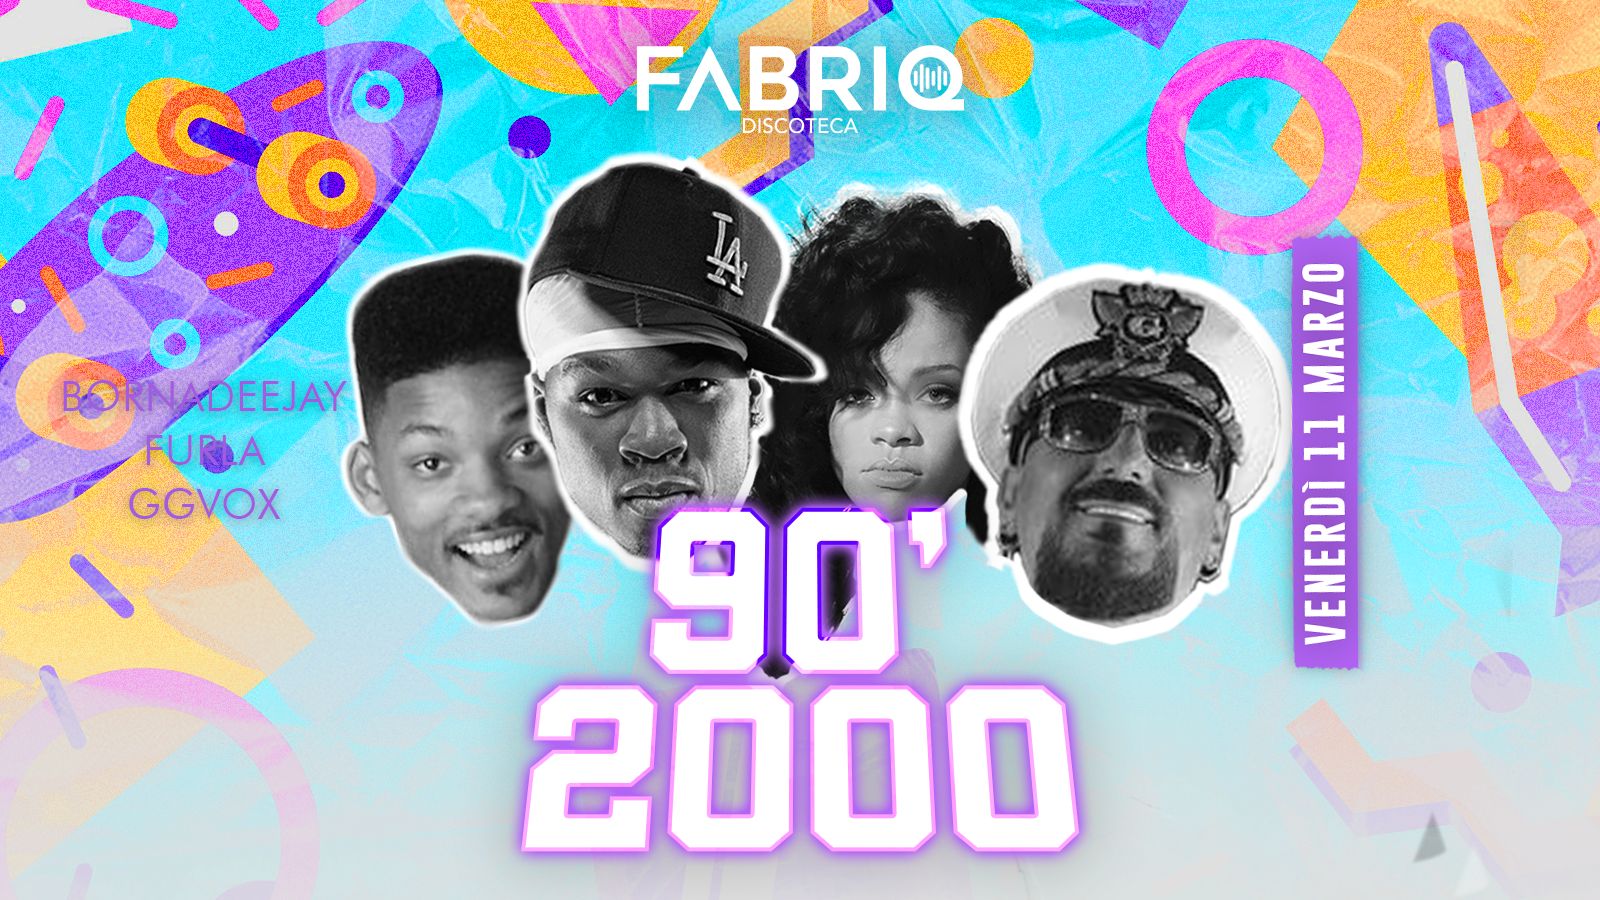 90'200 , Fabriq , Portogruaro